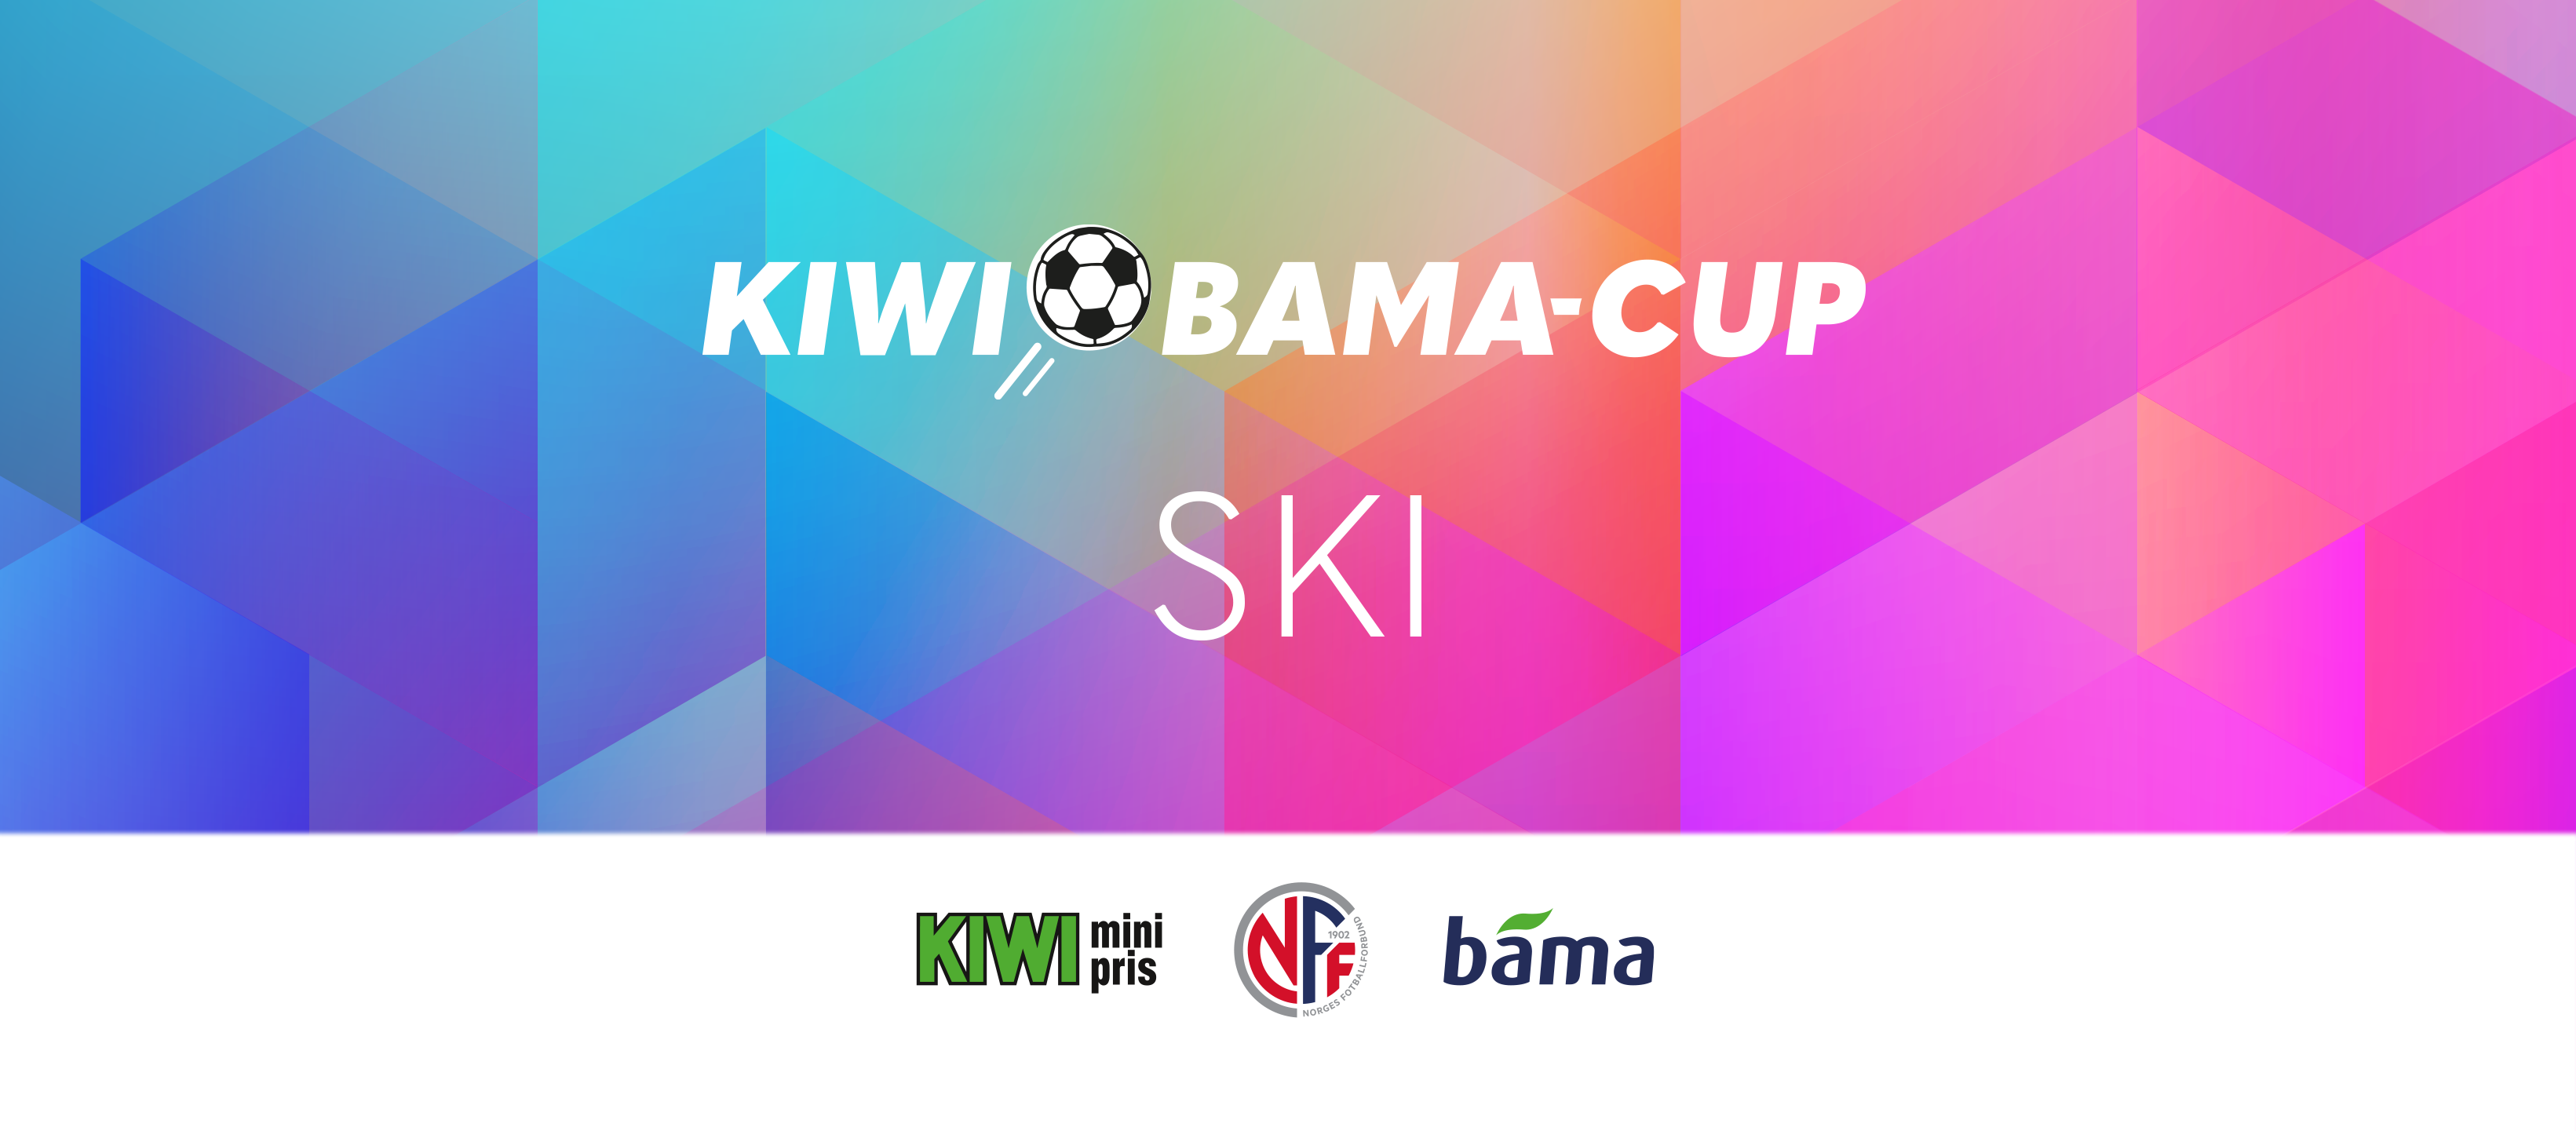 FB-BANNER KIWI-BAMA-Cup - Ski.png